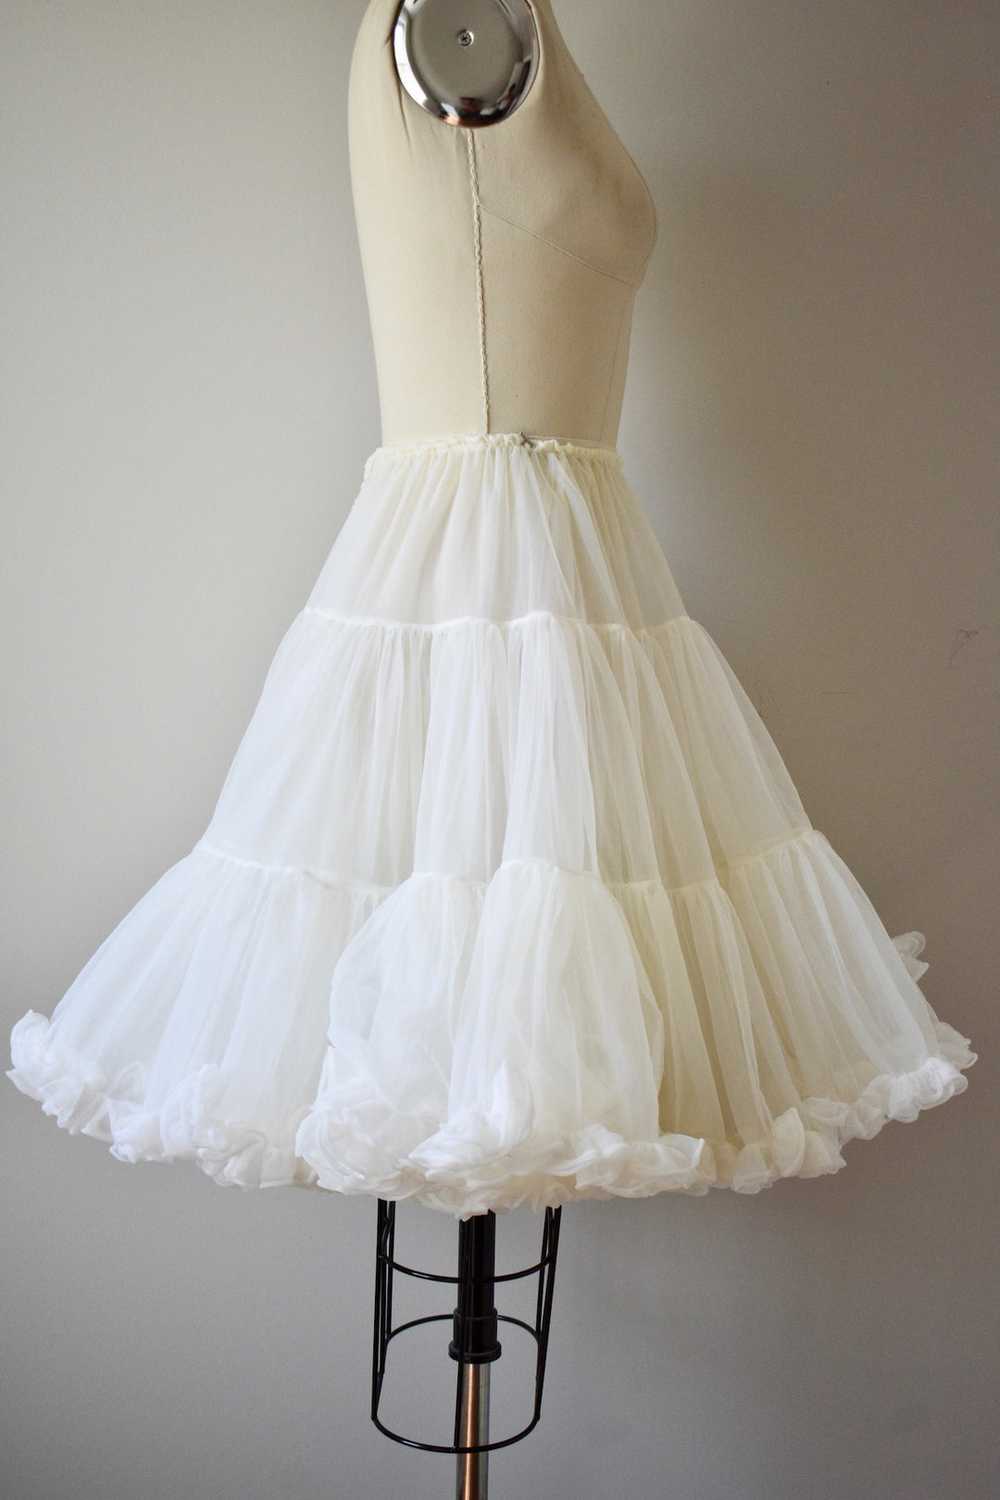 1950s White Underskirt - image 2